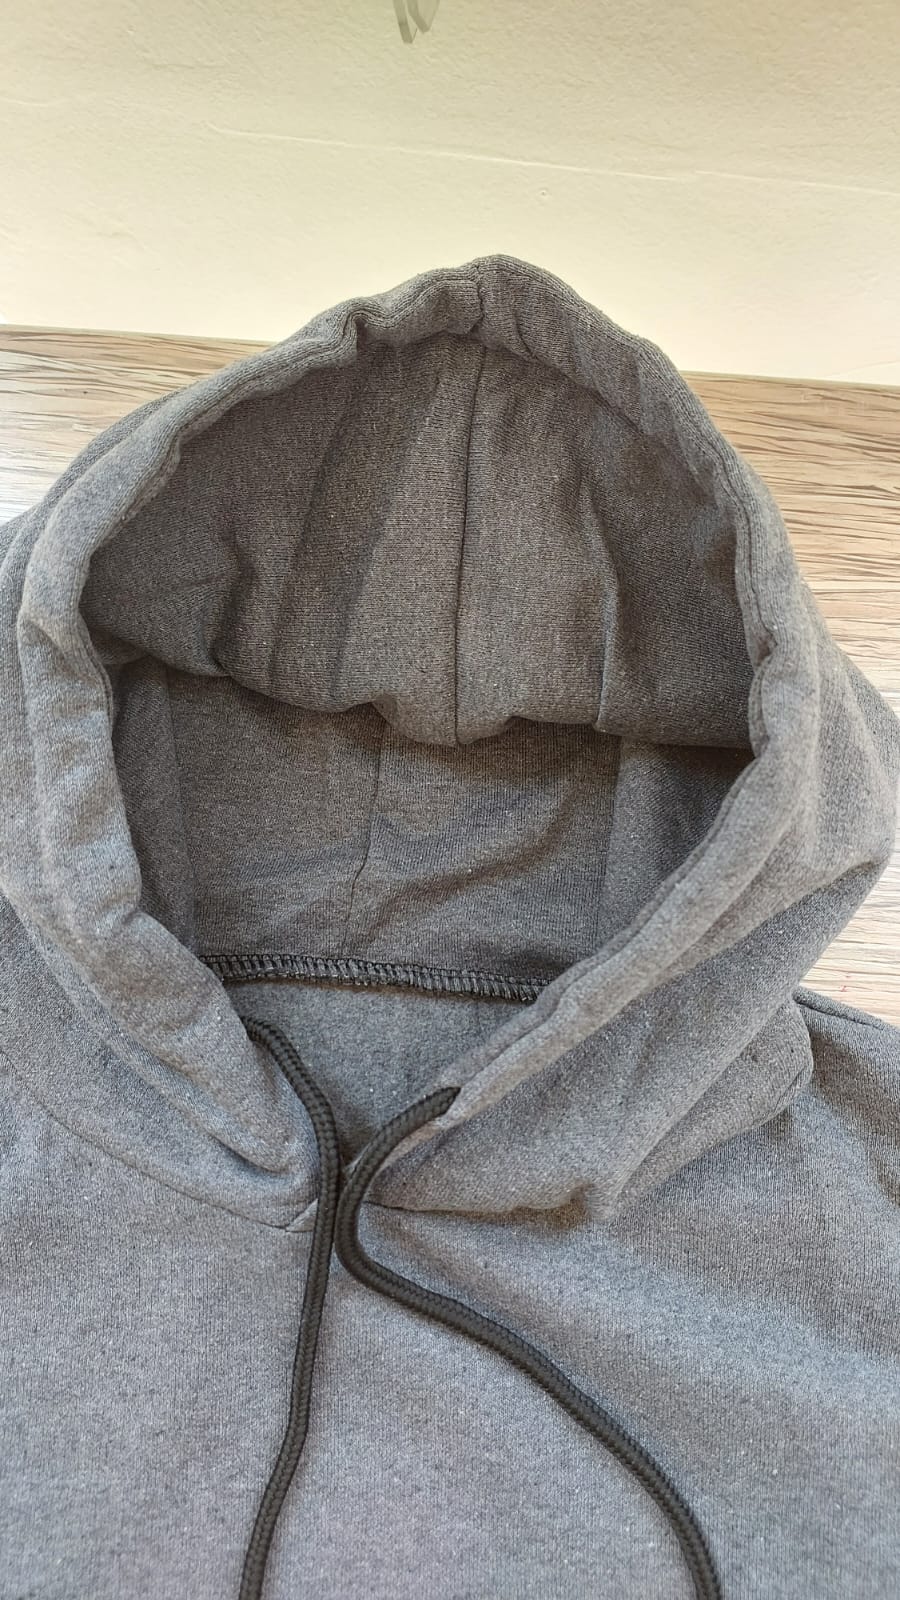 sweatshirt tasarla uygun fiyat yuvarlak yaka iki iplik 2